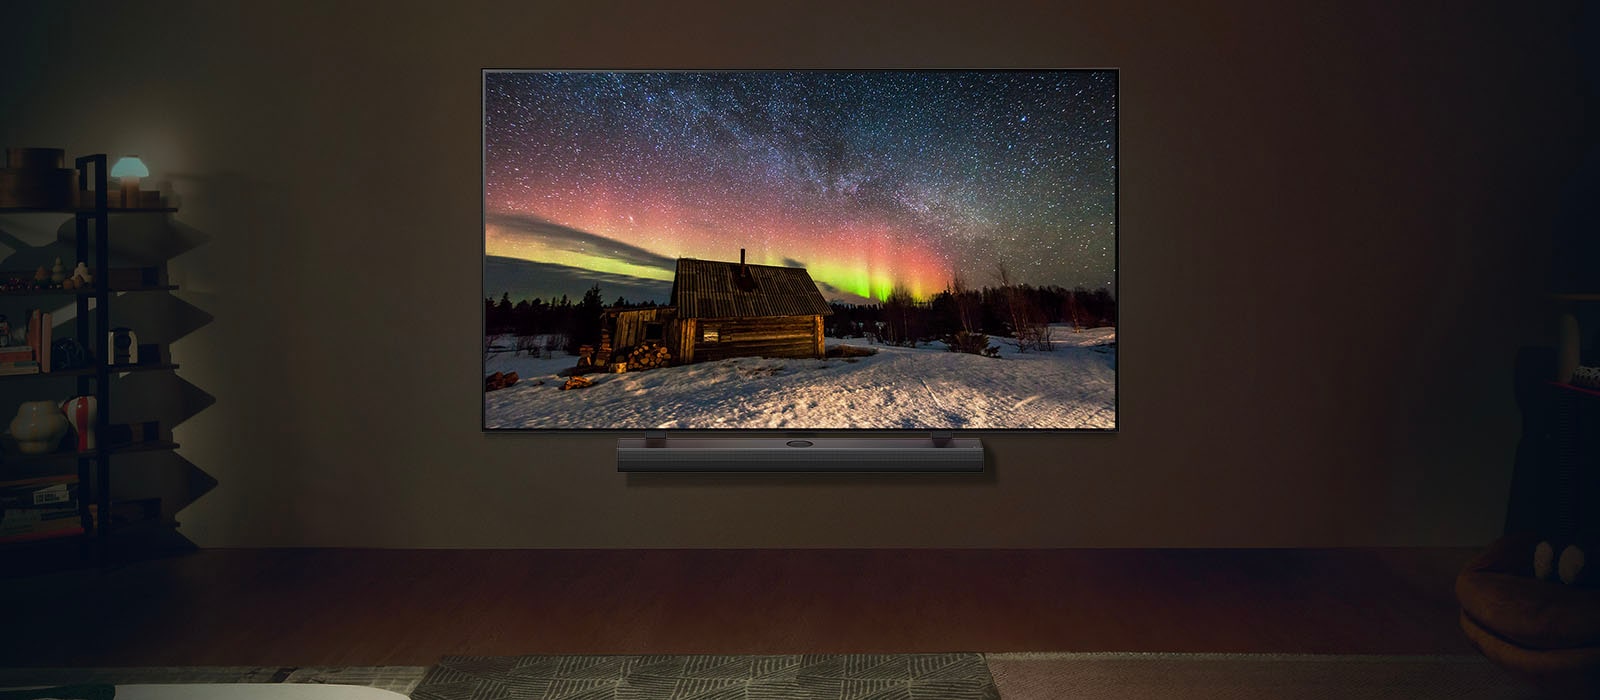 LG TV och LG Soundbar i ett modernt vardagsrum på natten. Skärmen visar norrsken med den idealiska ljusstyrkan.